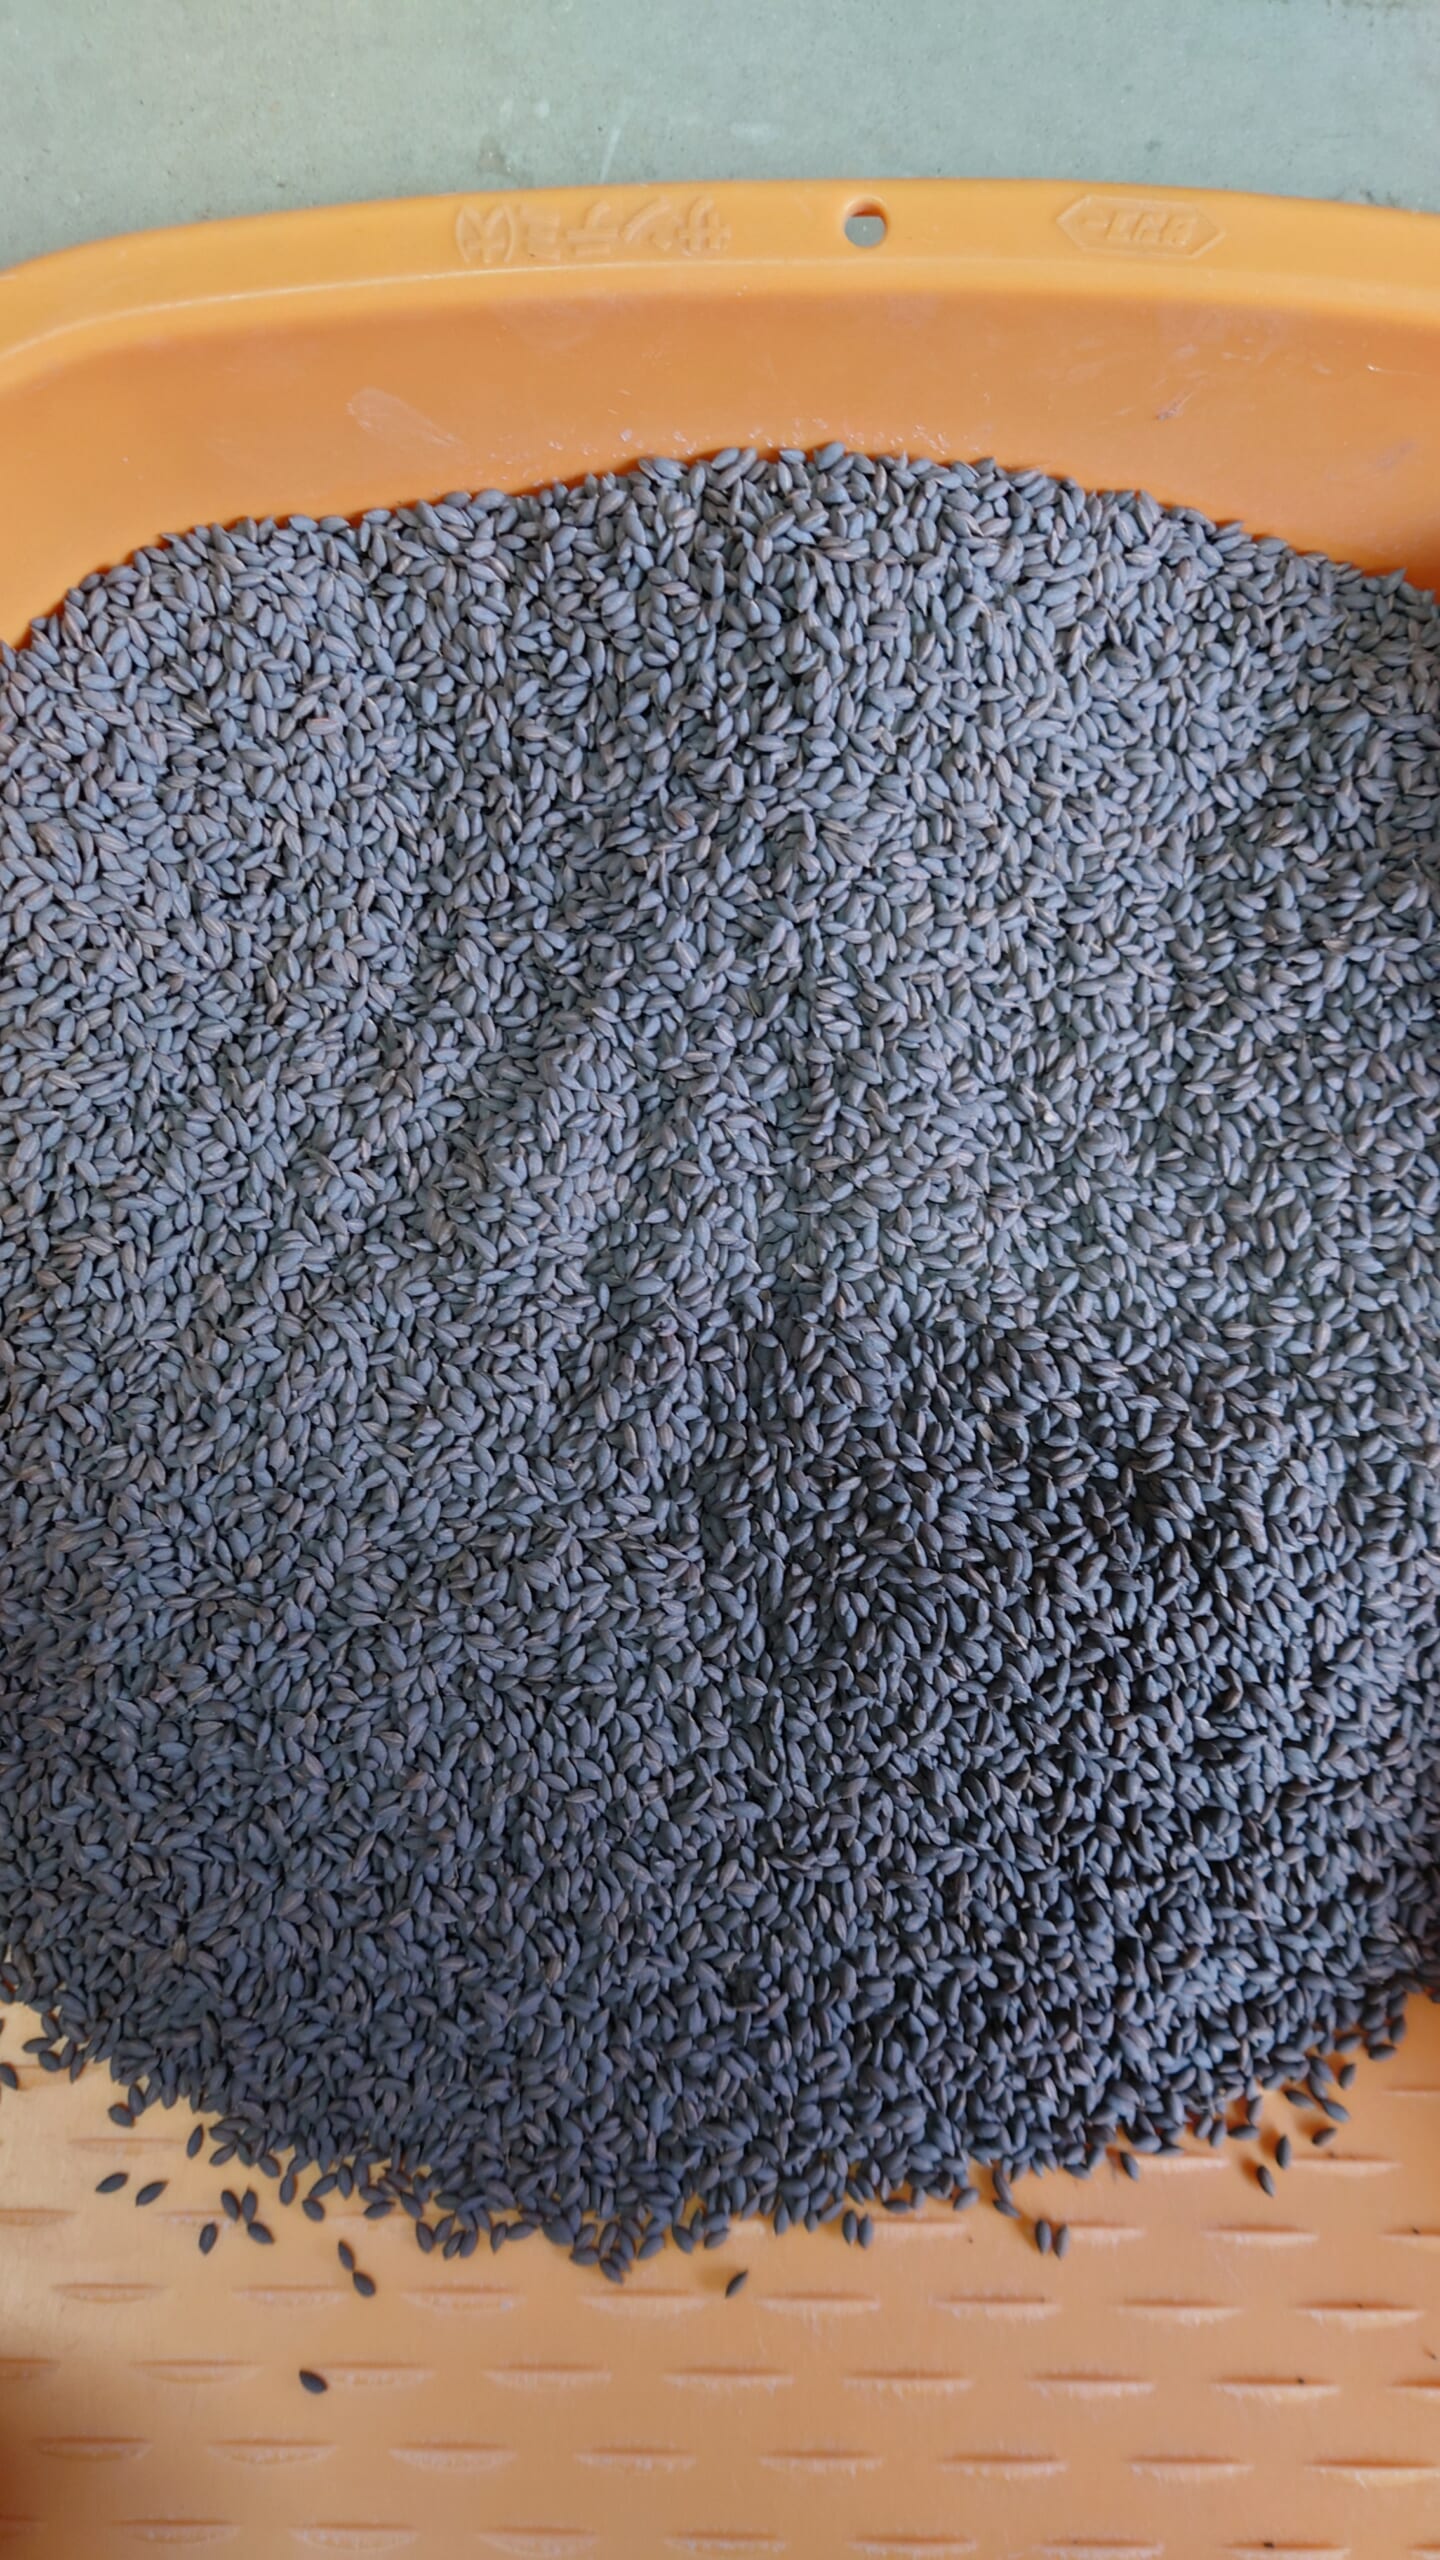 鉄コーティングした種籾。専用の鉄粉・焼石膏をまぶして乾燥させて、田んぼに直接播種する技術。